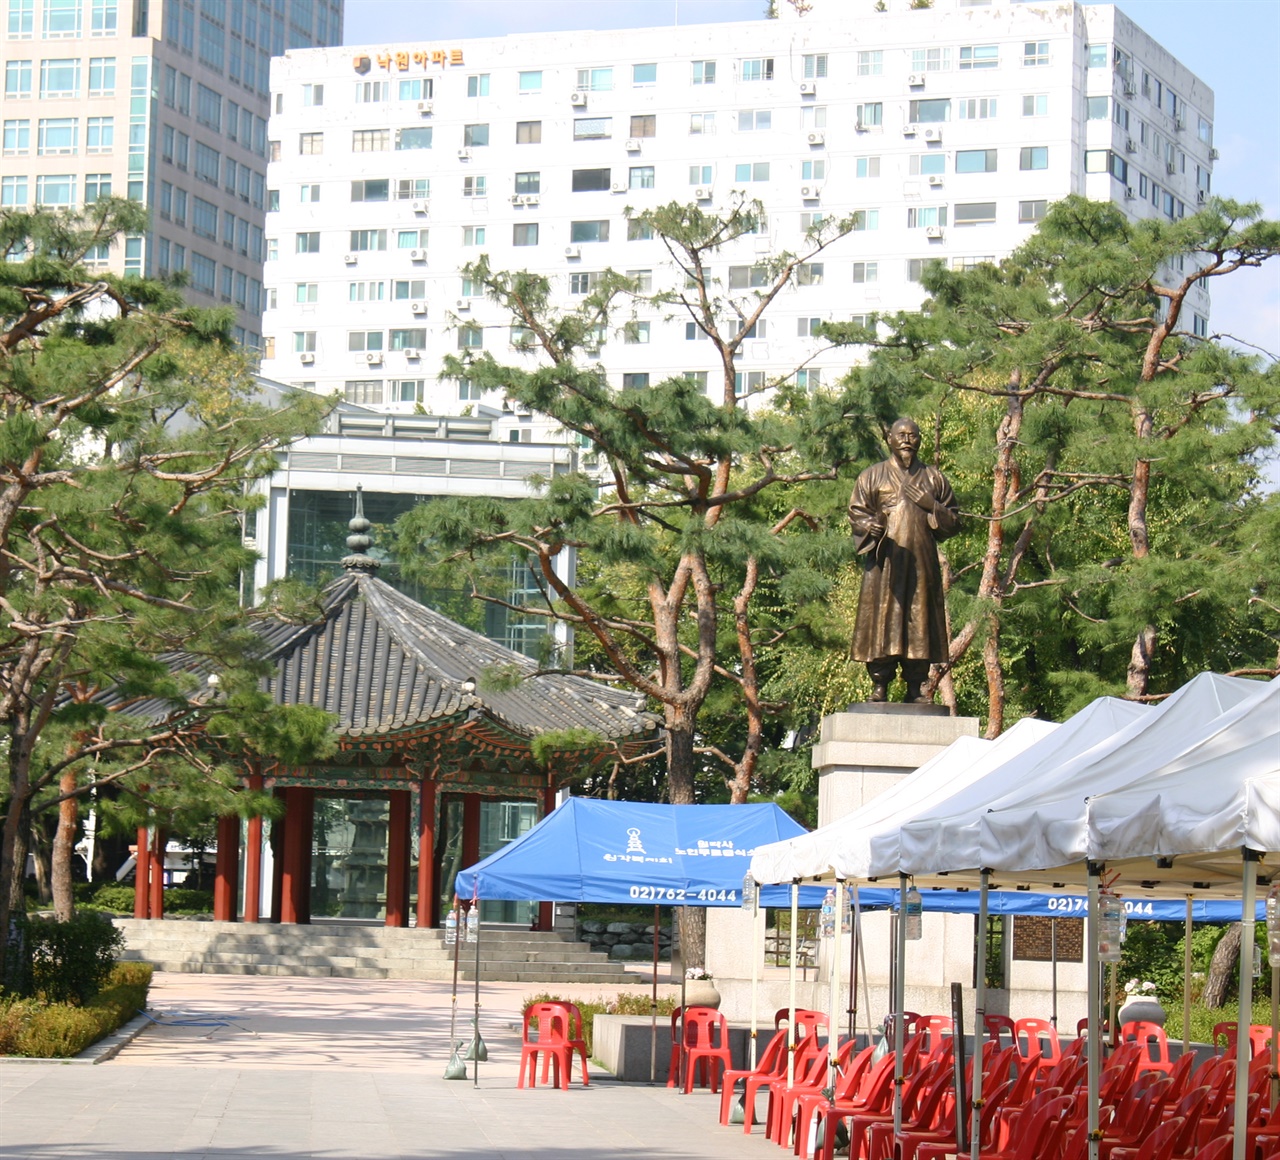 서울 종로 탑골공원, 당시에는 우국지사. 잡상인, 실업자들로 메웠다. 최근에는 코로나 사태로 개방치 않아 한산하다.